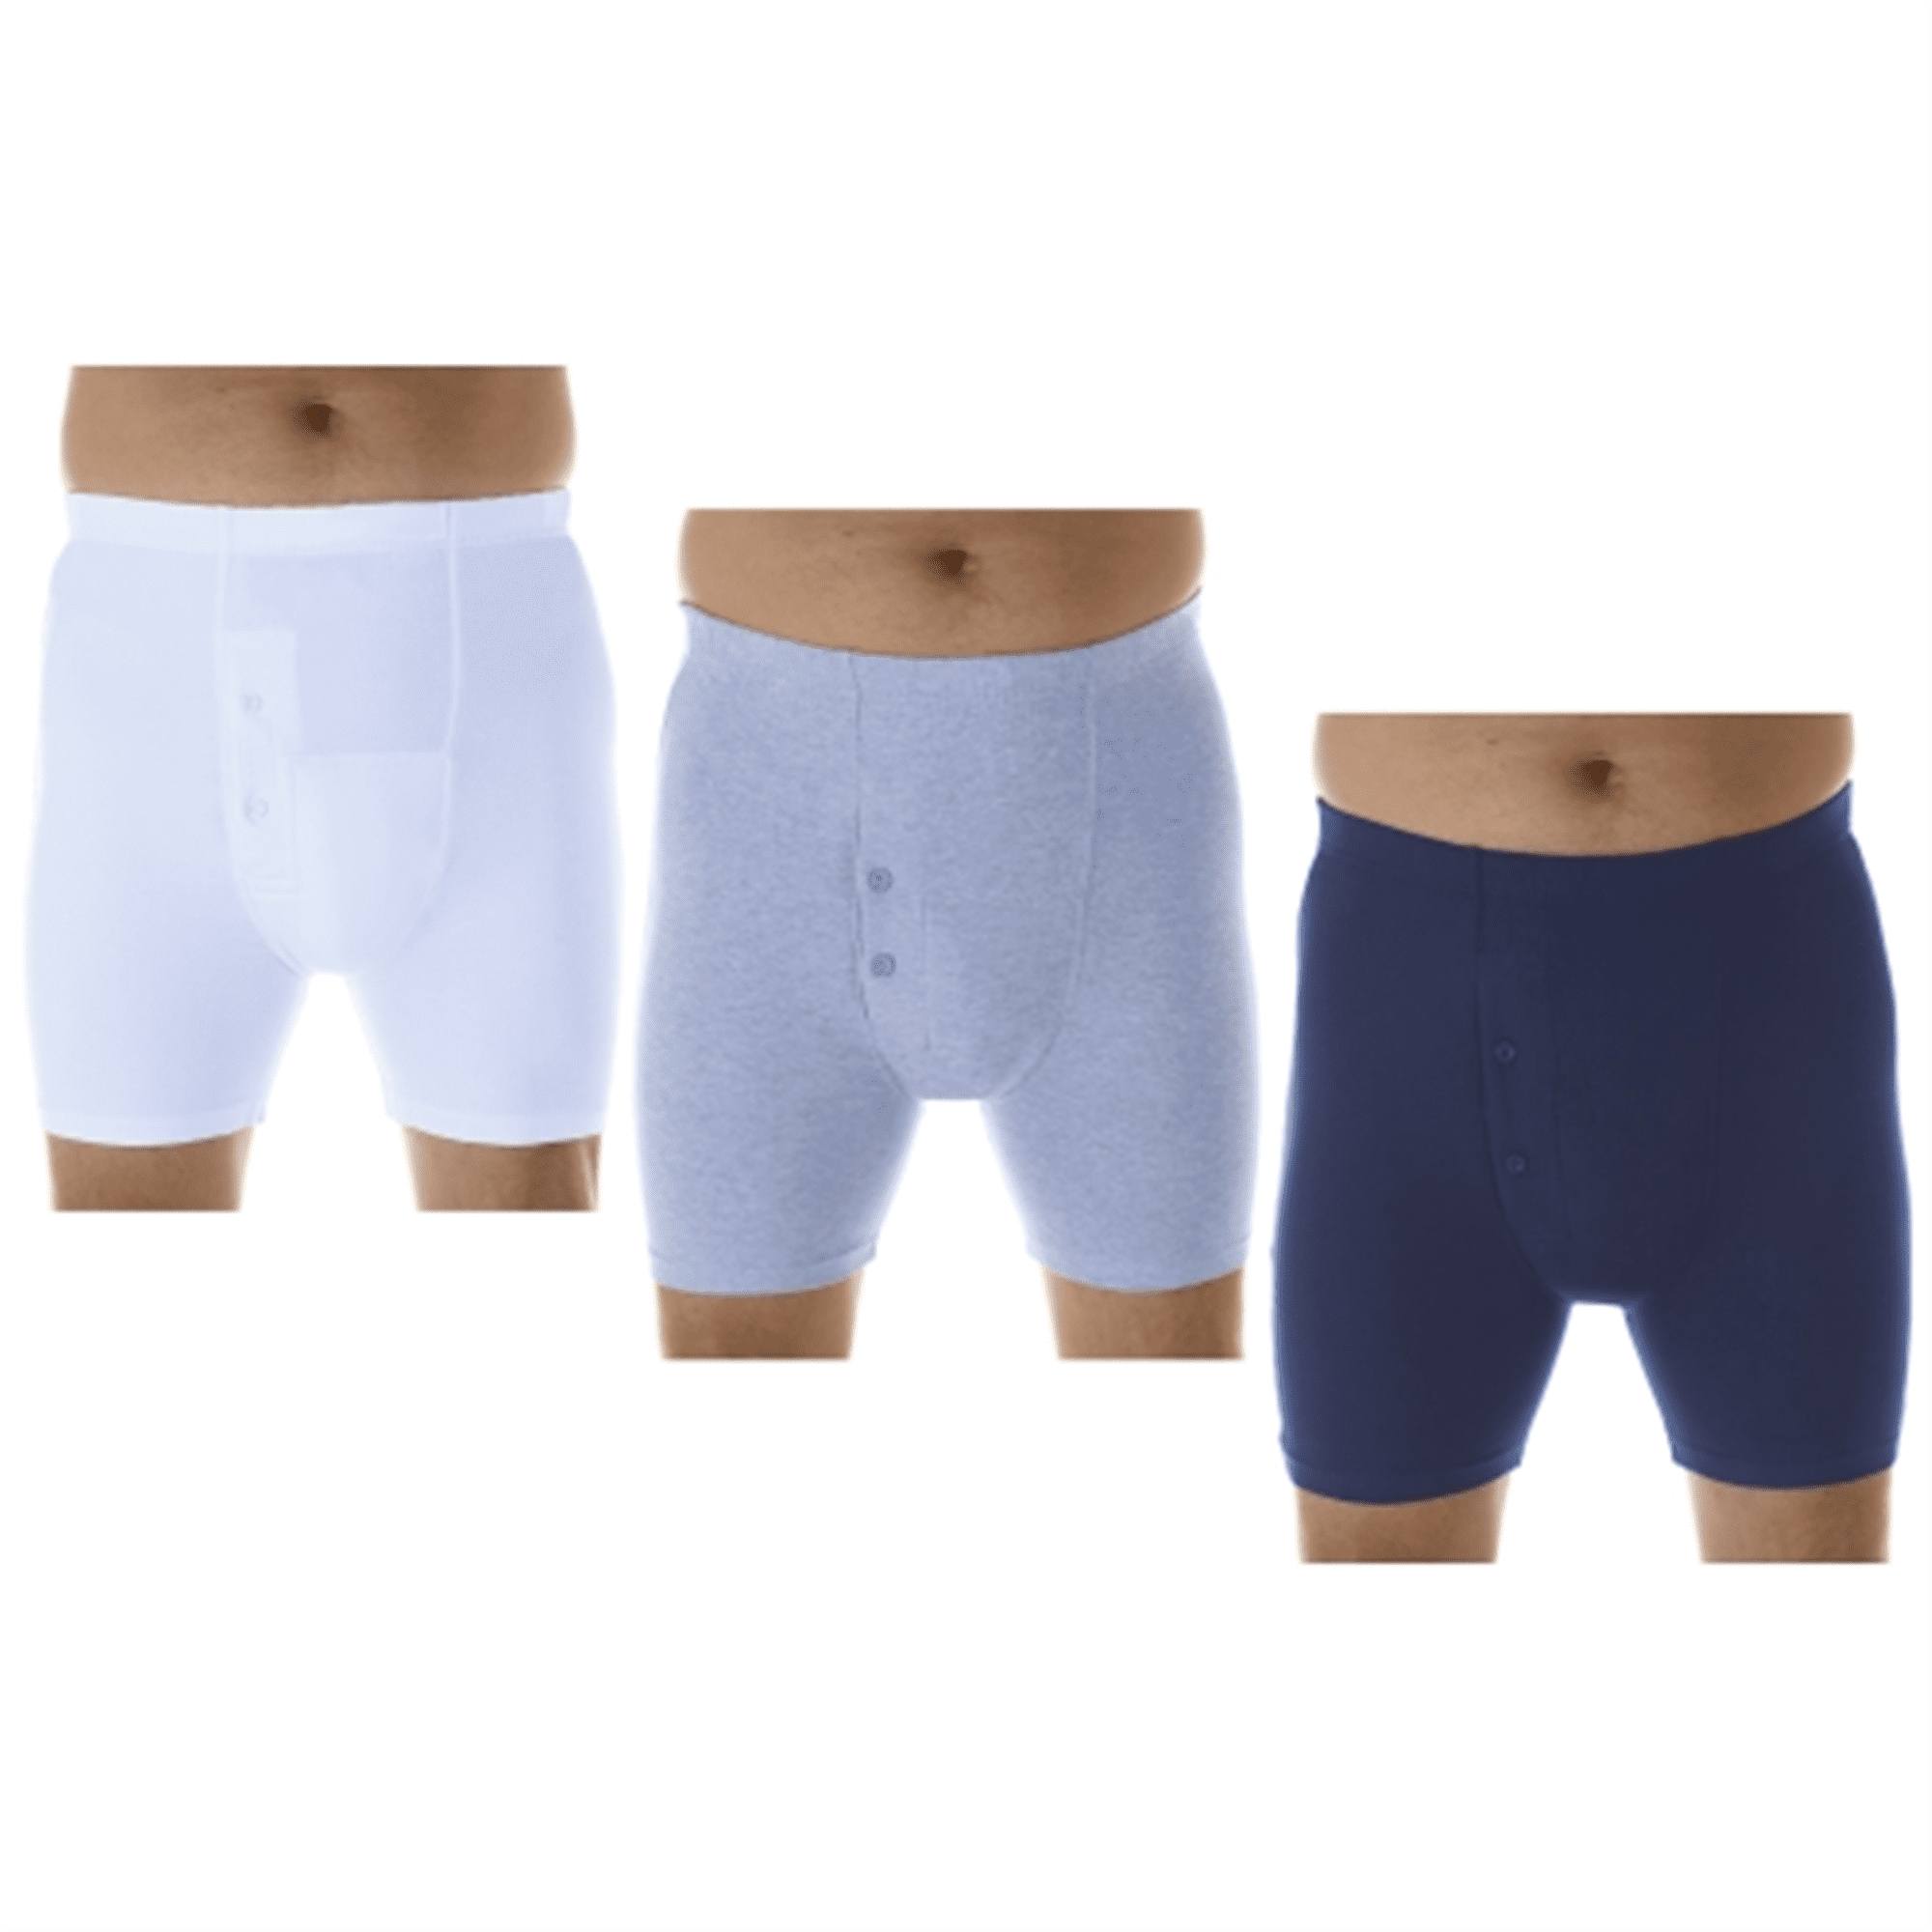  Men's Incontinence Underwear 3-Packs Bladder Control